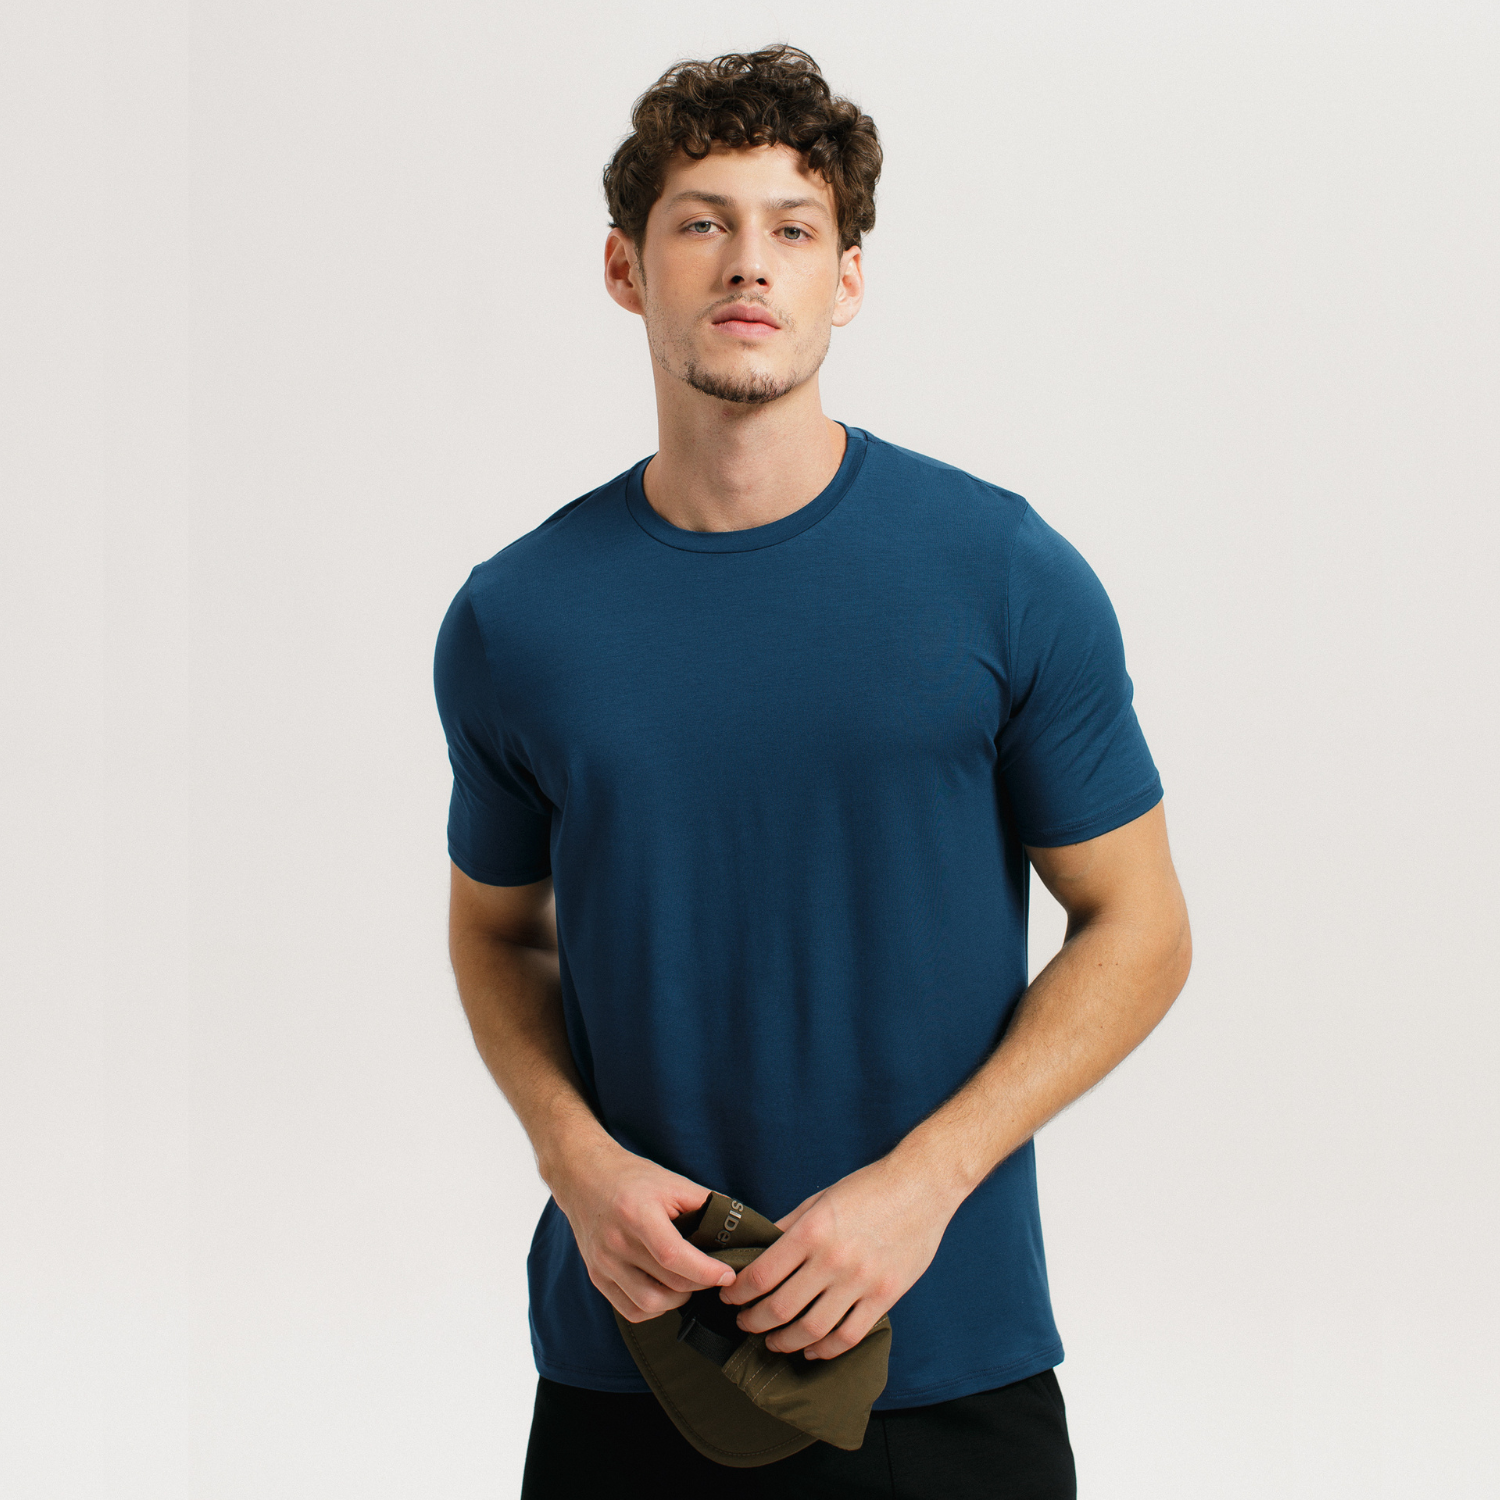 Tech T-Shirt long Sleeve: Modelo de camiseta manga longa da Insider